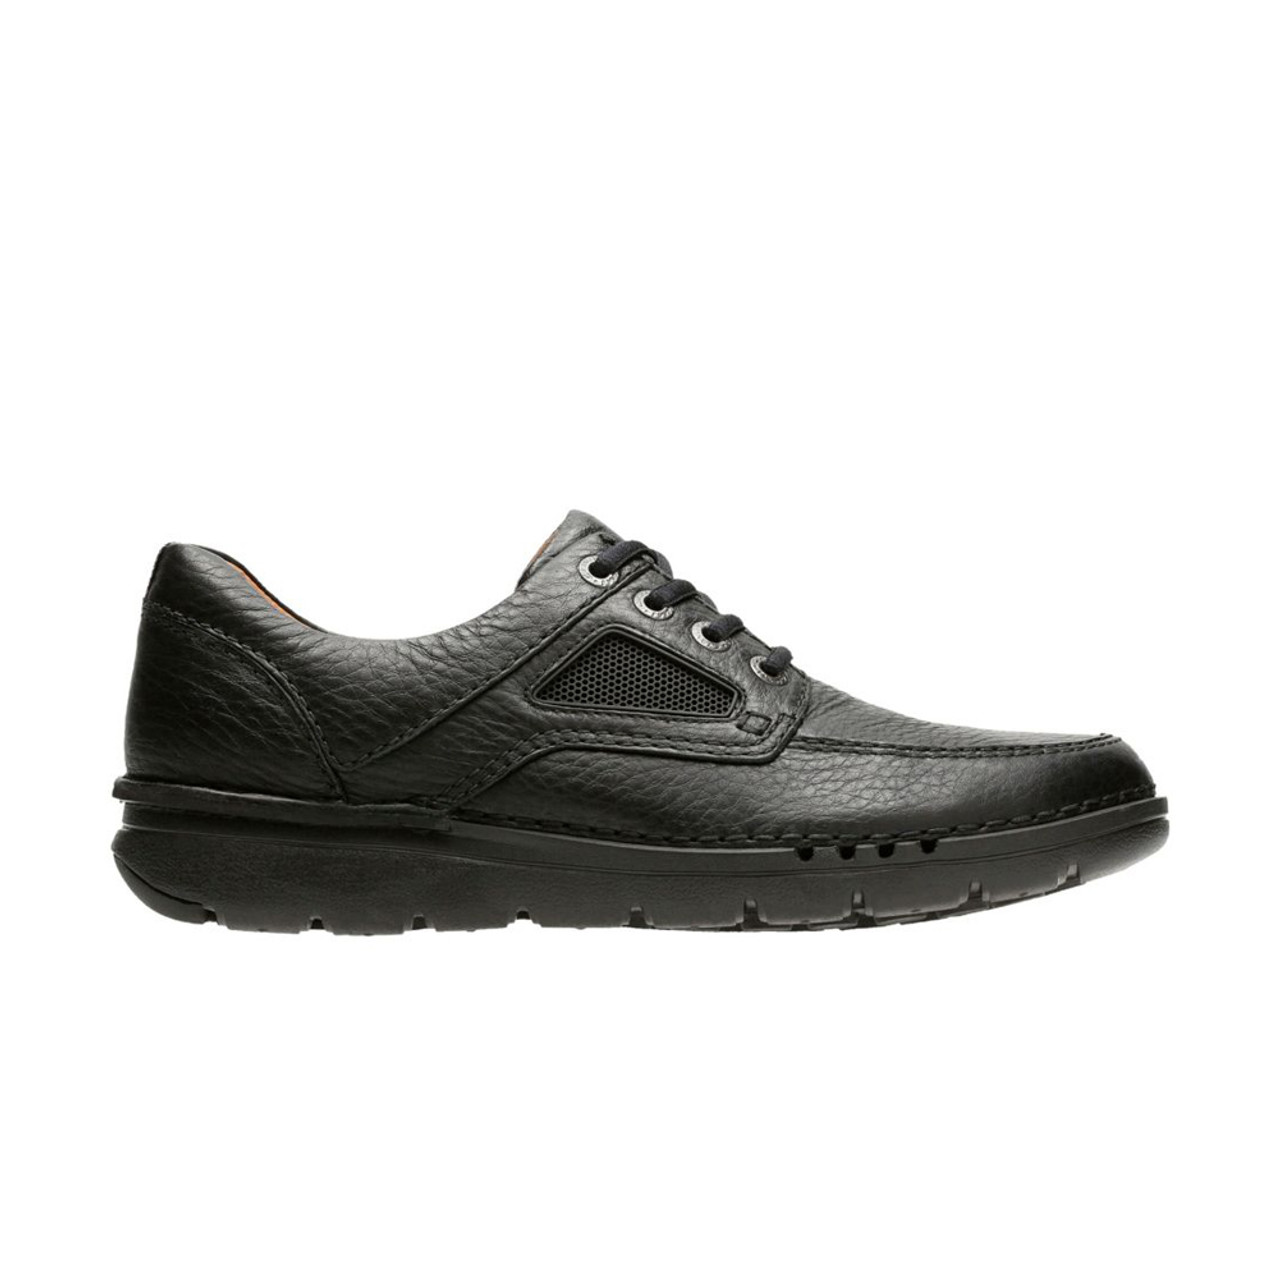 Men's Unnature Time Lace - Black | Discount Men's Shoes & More - Shoolu.com | Shoolu.com